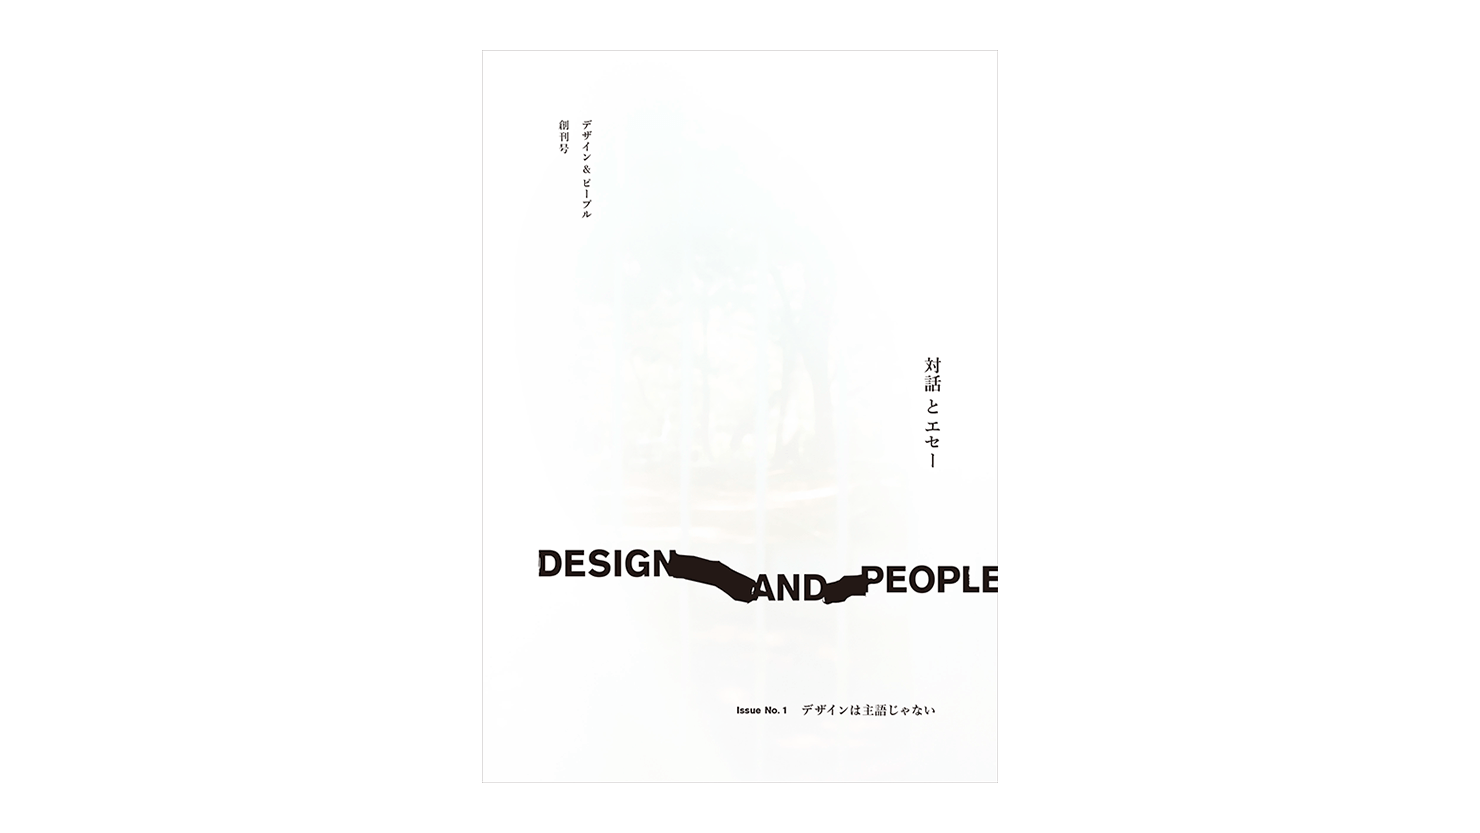 デザイン誌『DESIGN AND PEOPLE｜Issue No. 1』刊行記念クロストークイベントを青山ブックセンターにて開催